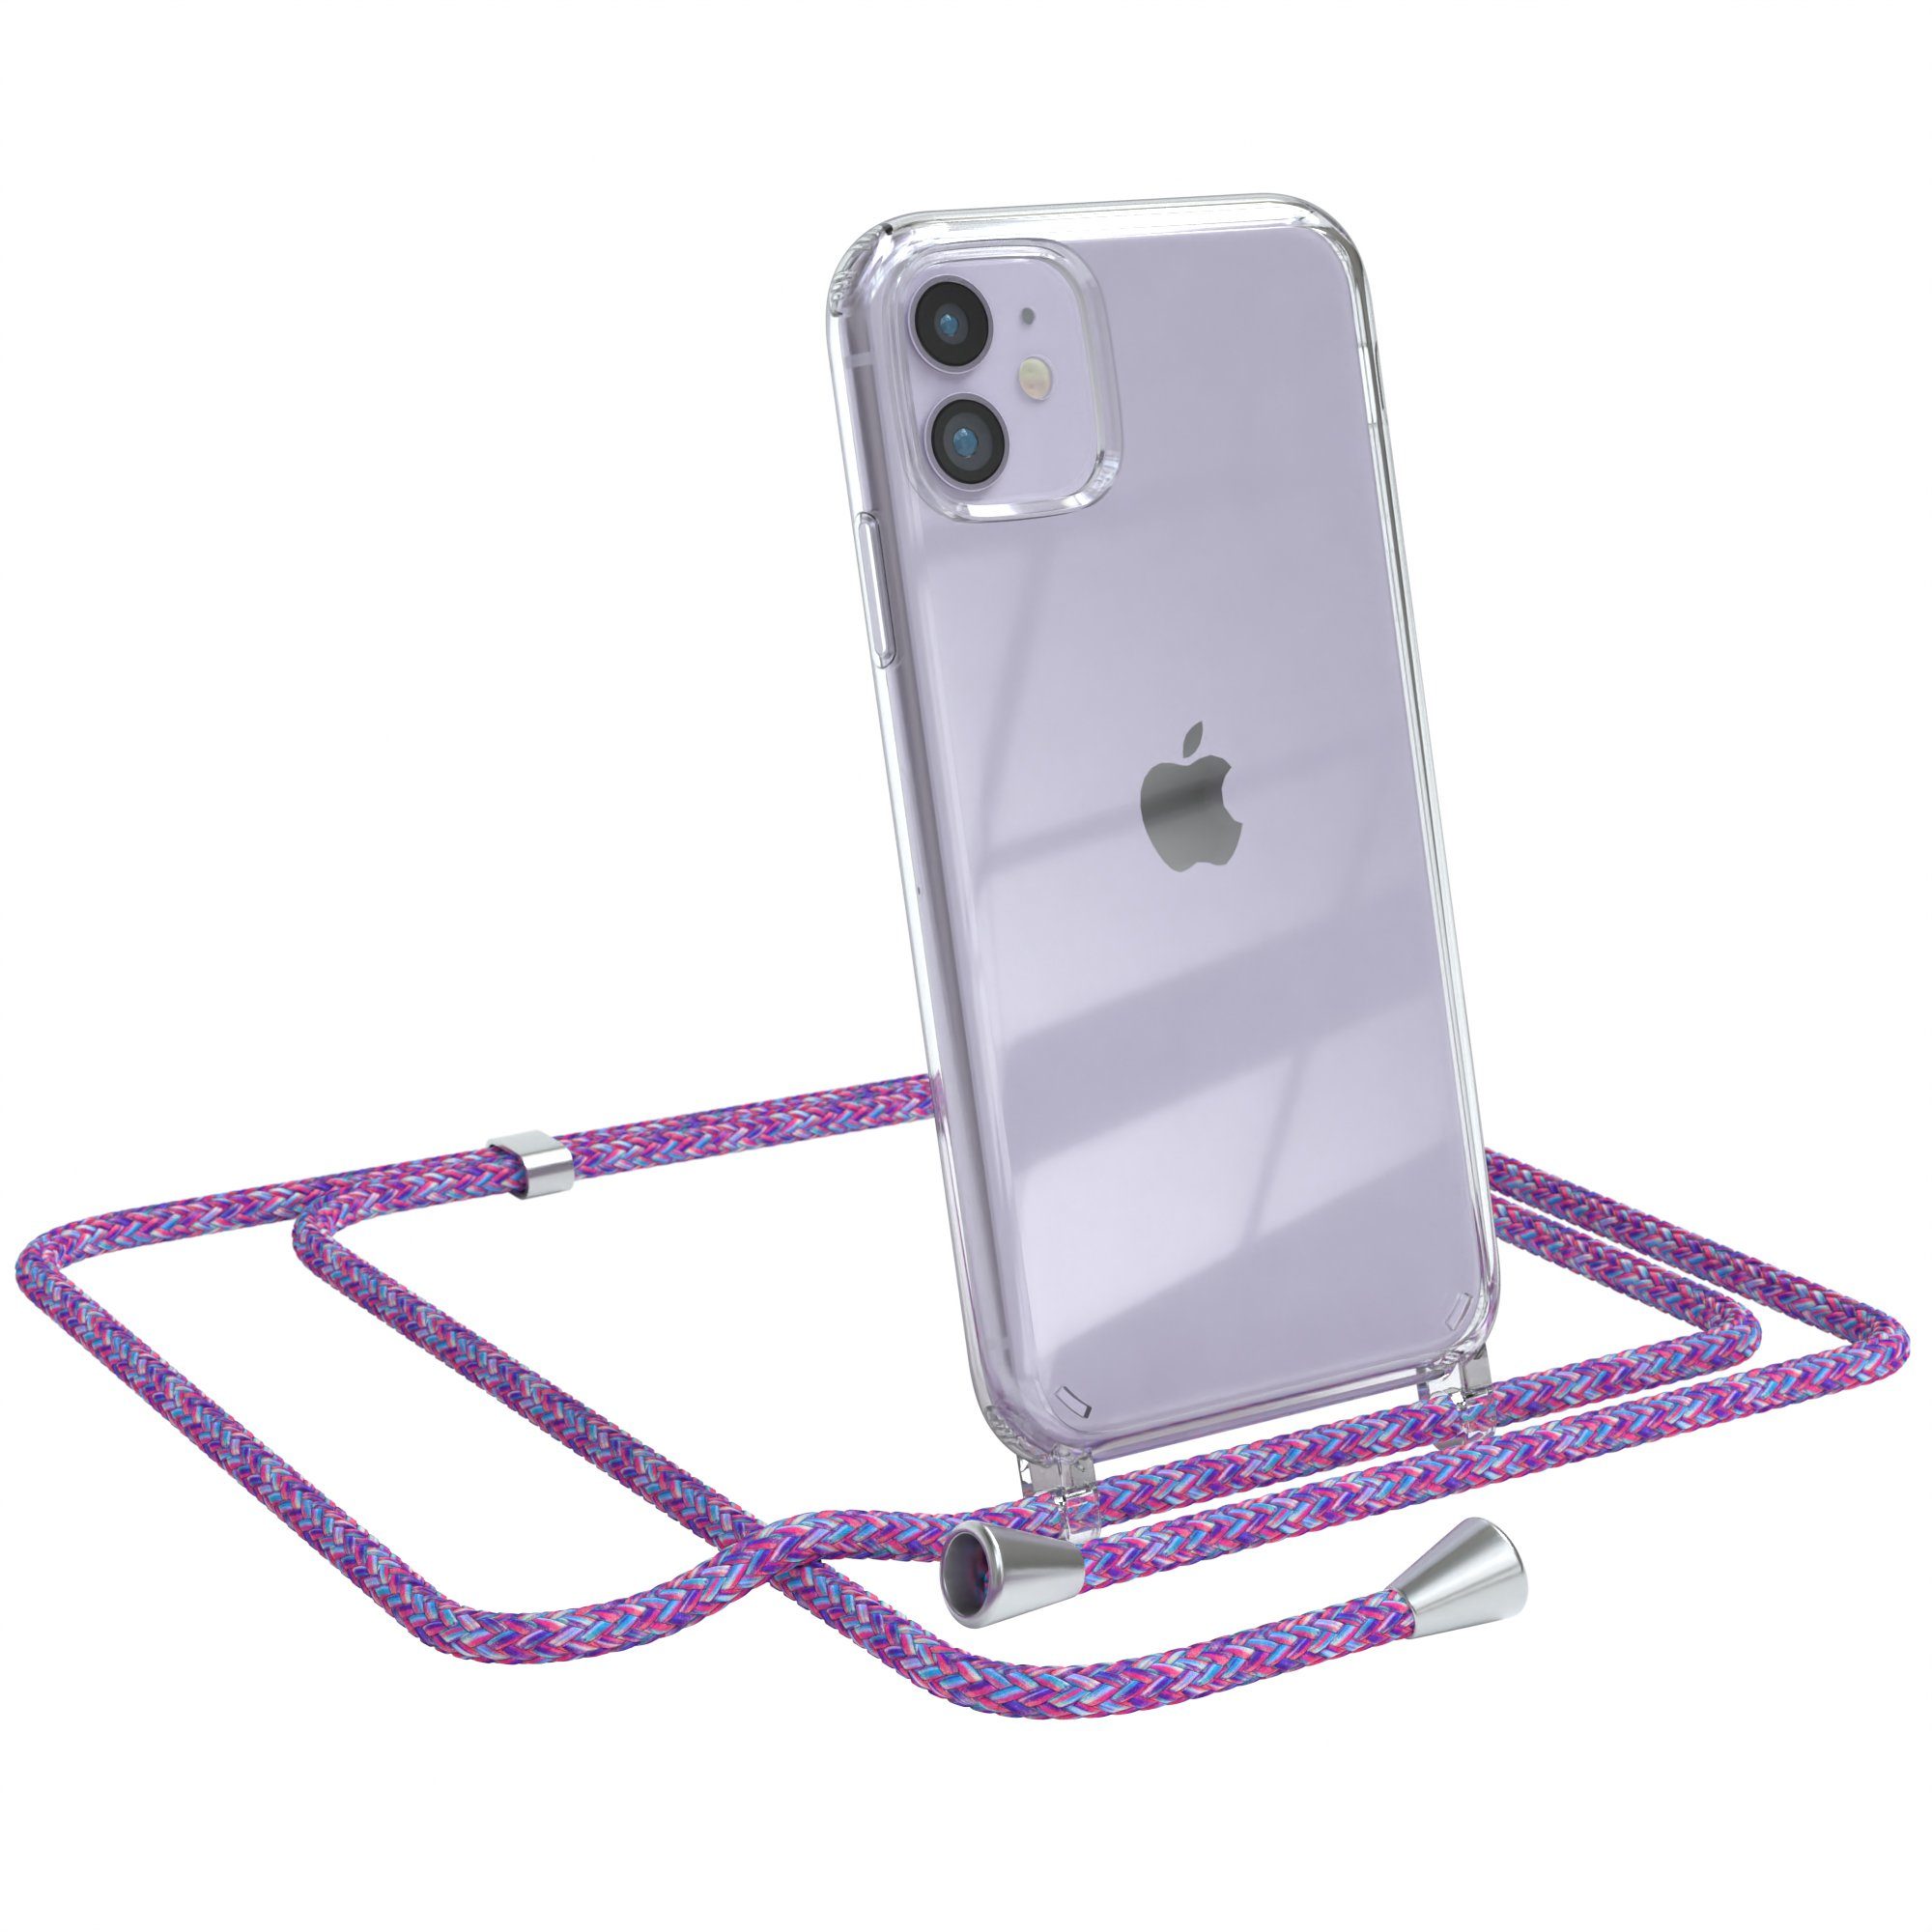 EAZY CASE Handykette Hülle mit Kette für Apple iPhone 11 6,1 Zoll, Umhängetasche für Handy Silikonhülle Handyhülle durchsichtig Violett